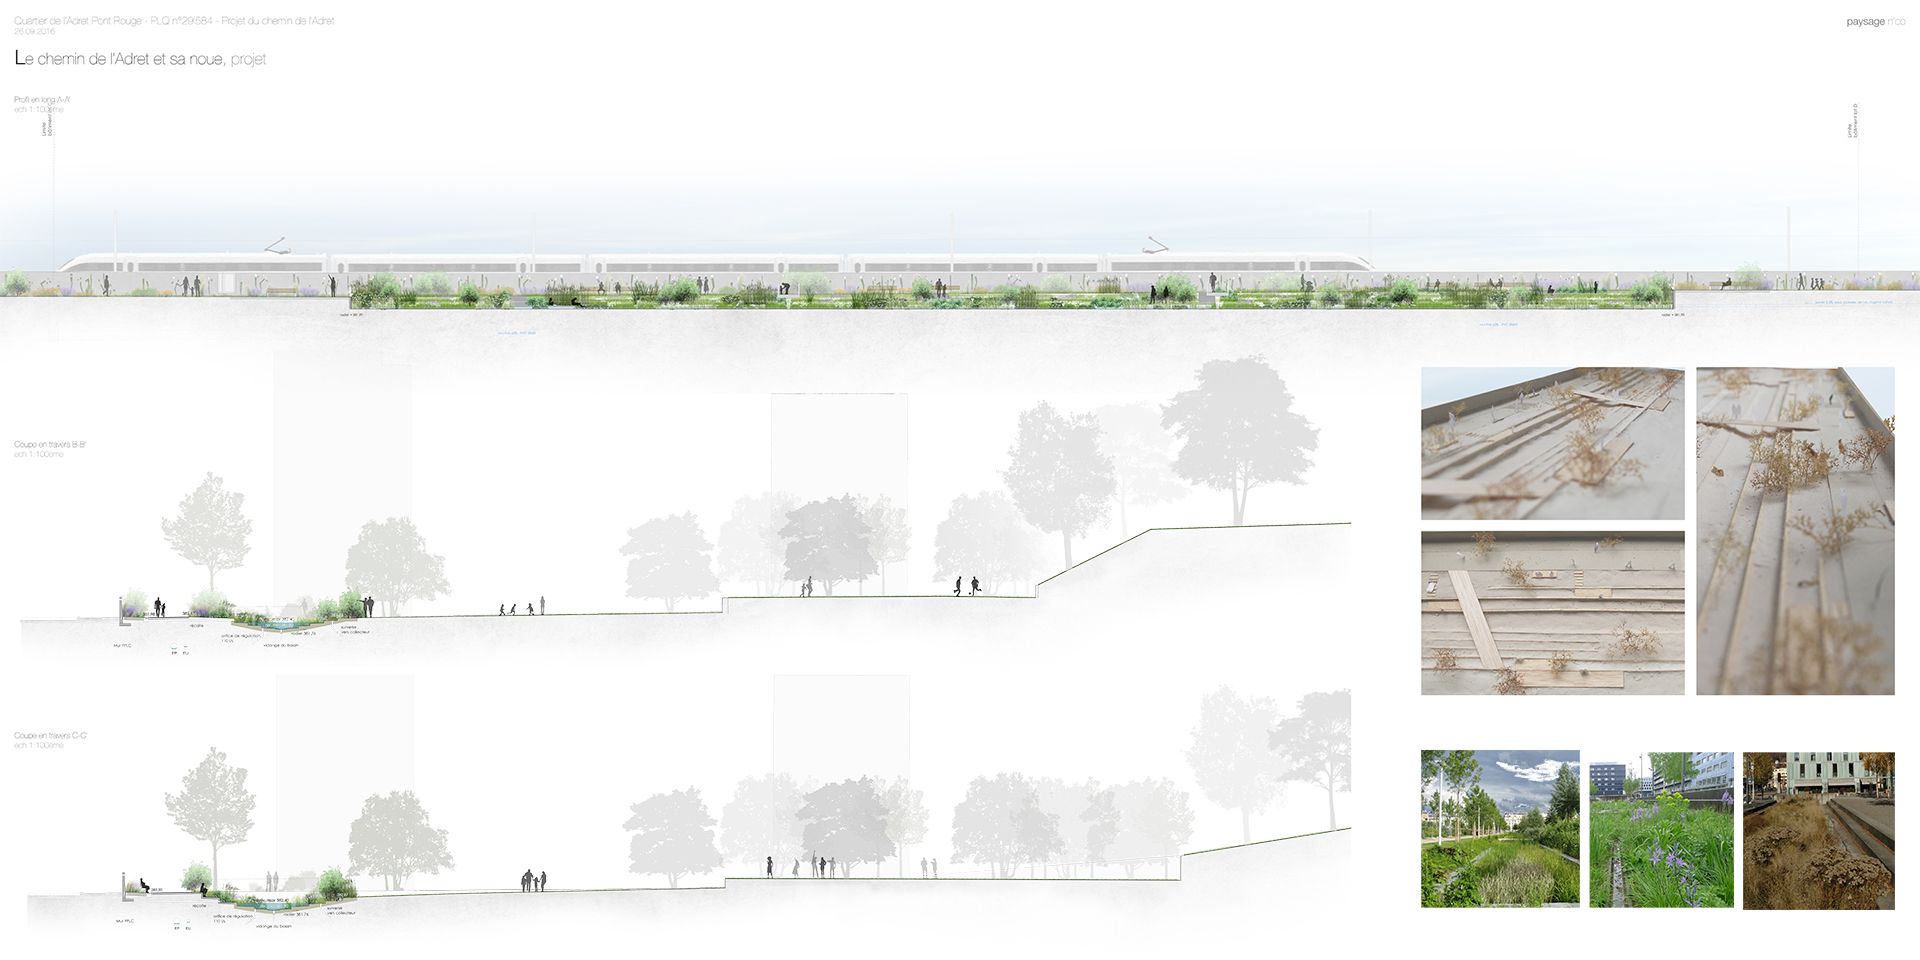 Echo-espace public-aménagement-jardin linéaire-axe mobilité-noue paysagère-jardin linéaire-axe de mobilité